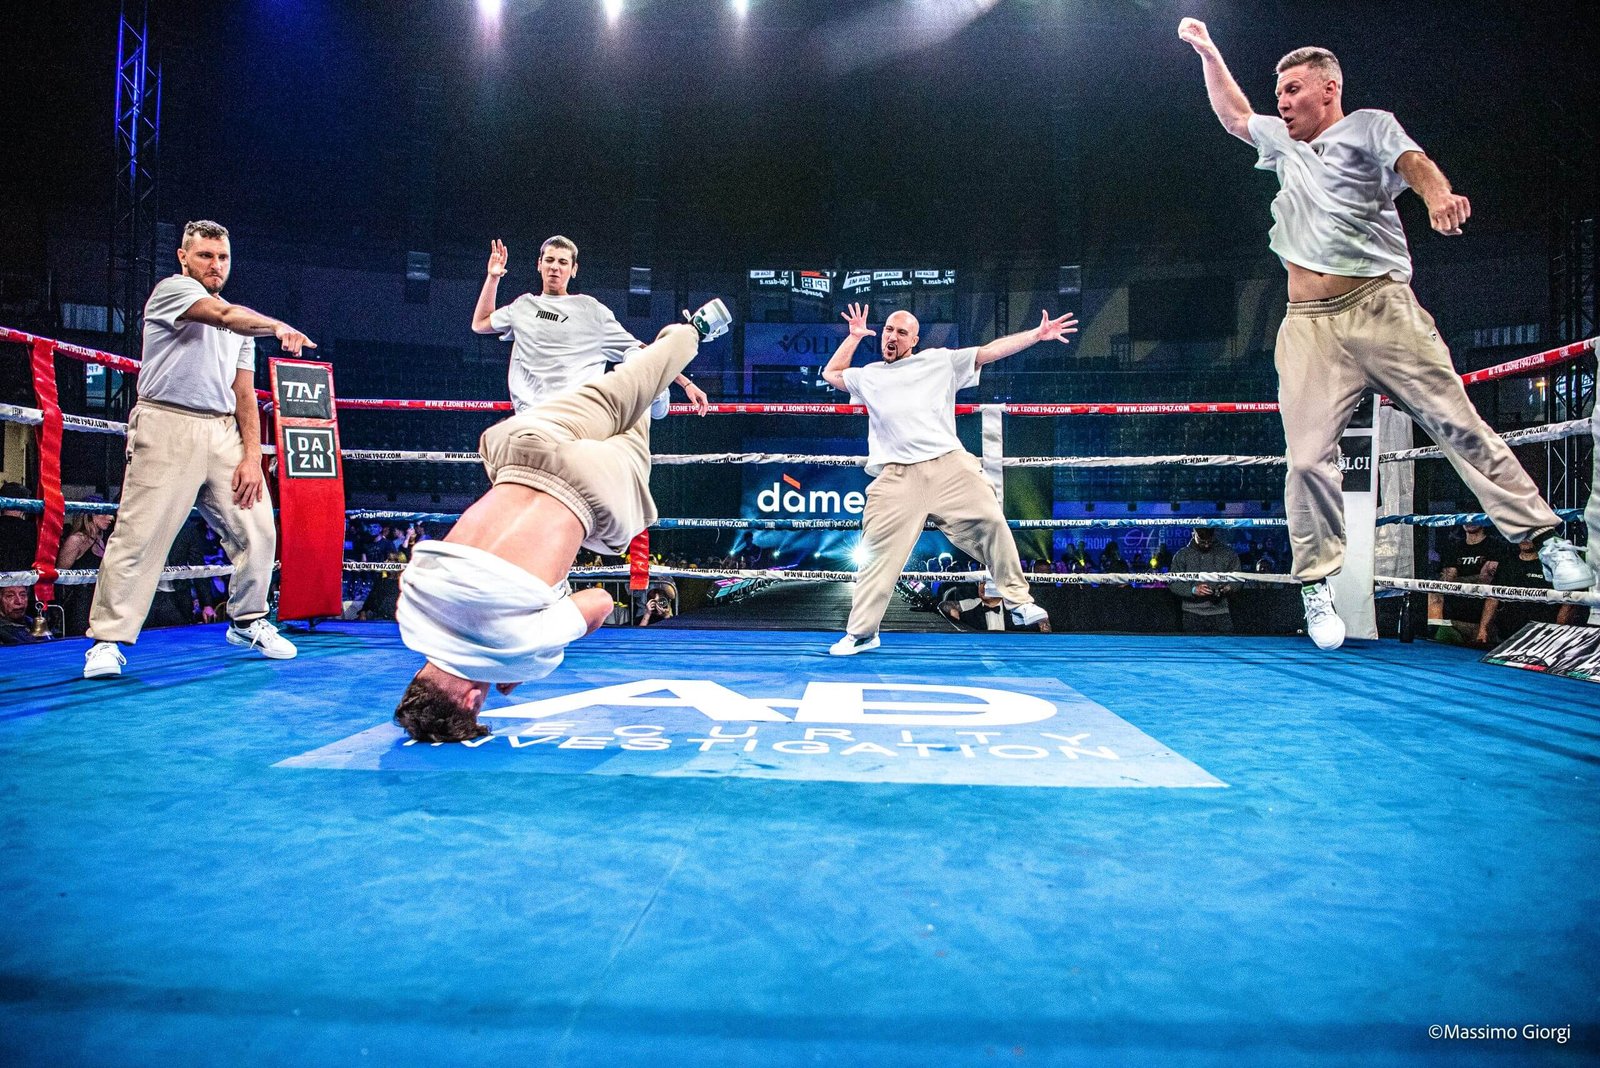 Uomini in performance di breakdance sul ring di boxe.